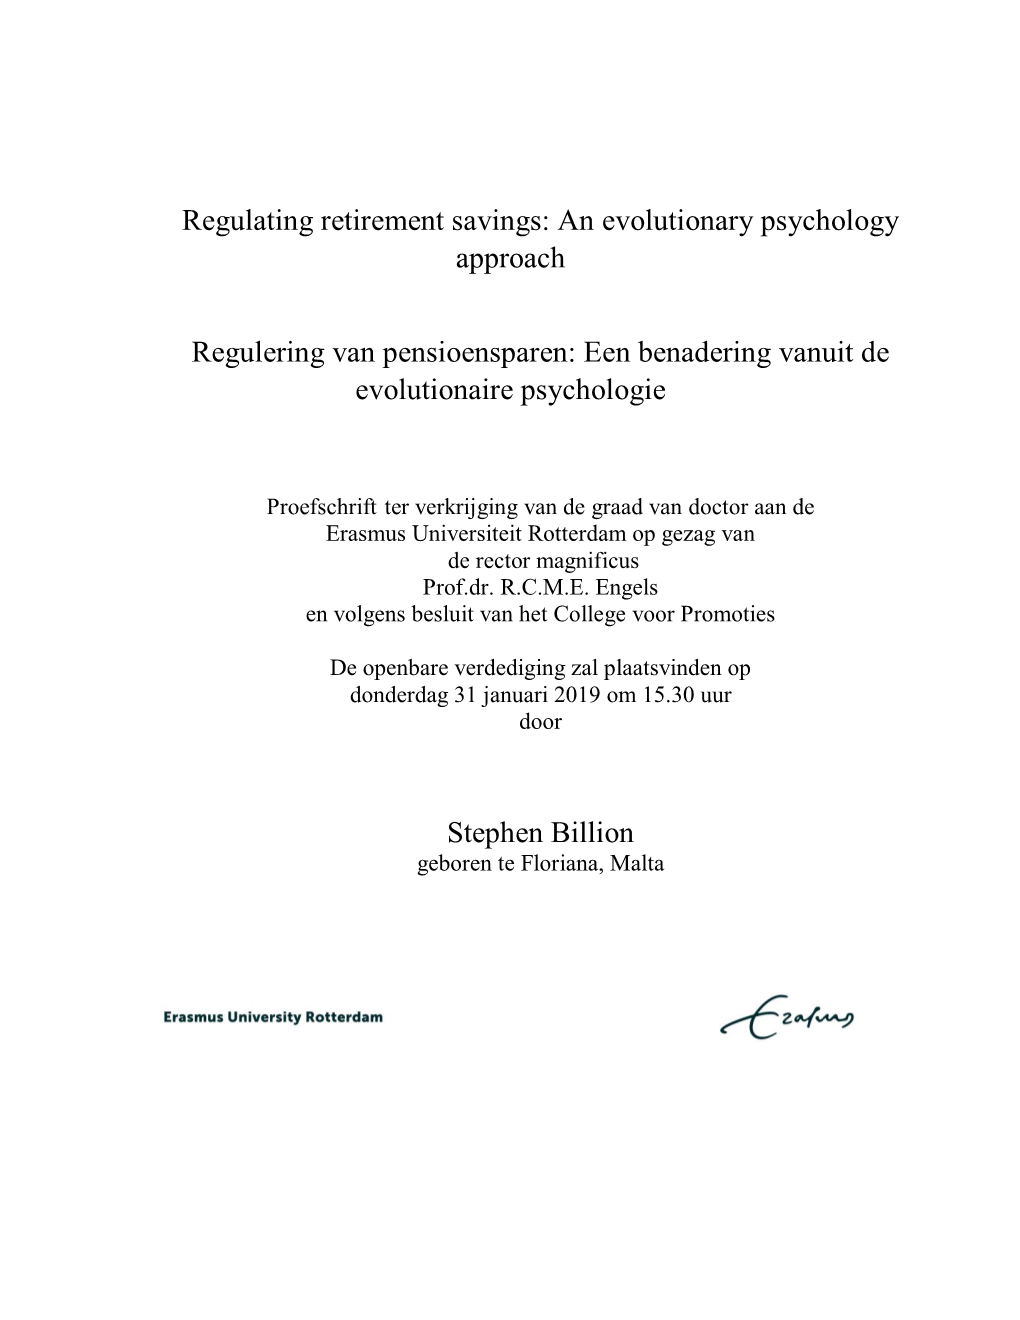 Regulating Retirement Savings: an Evolutionary Psychology Approach